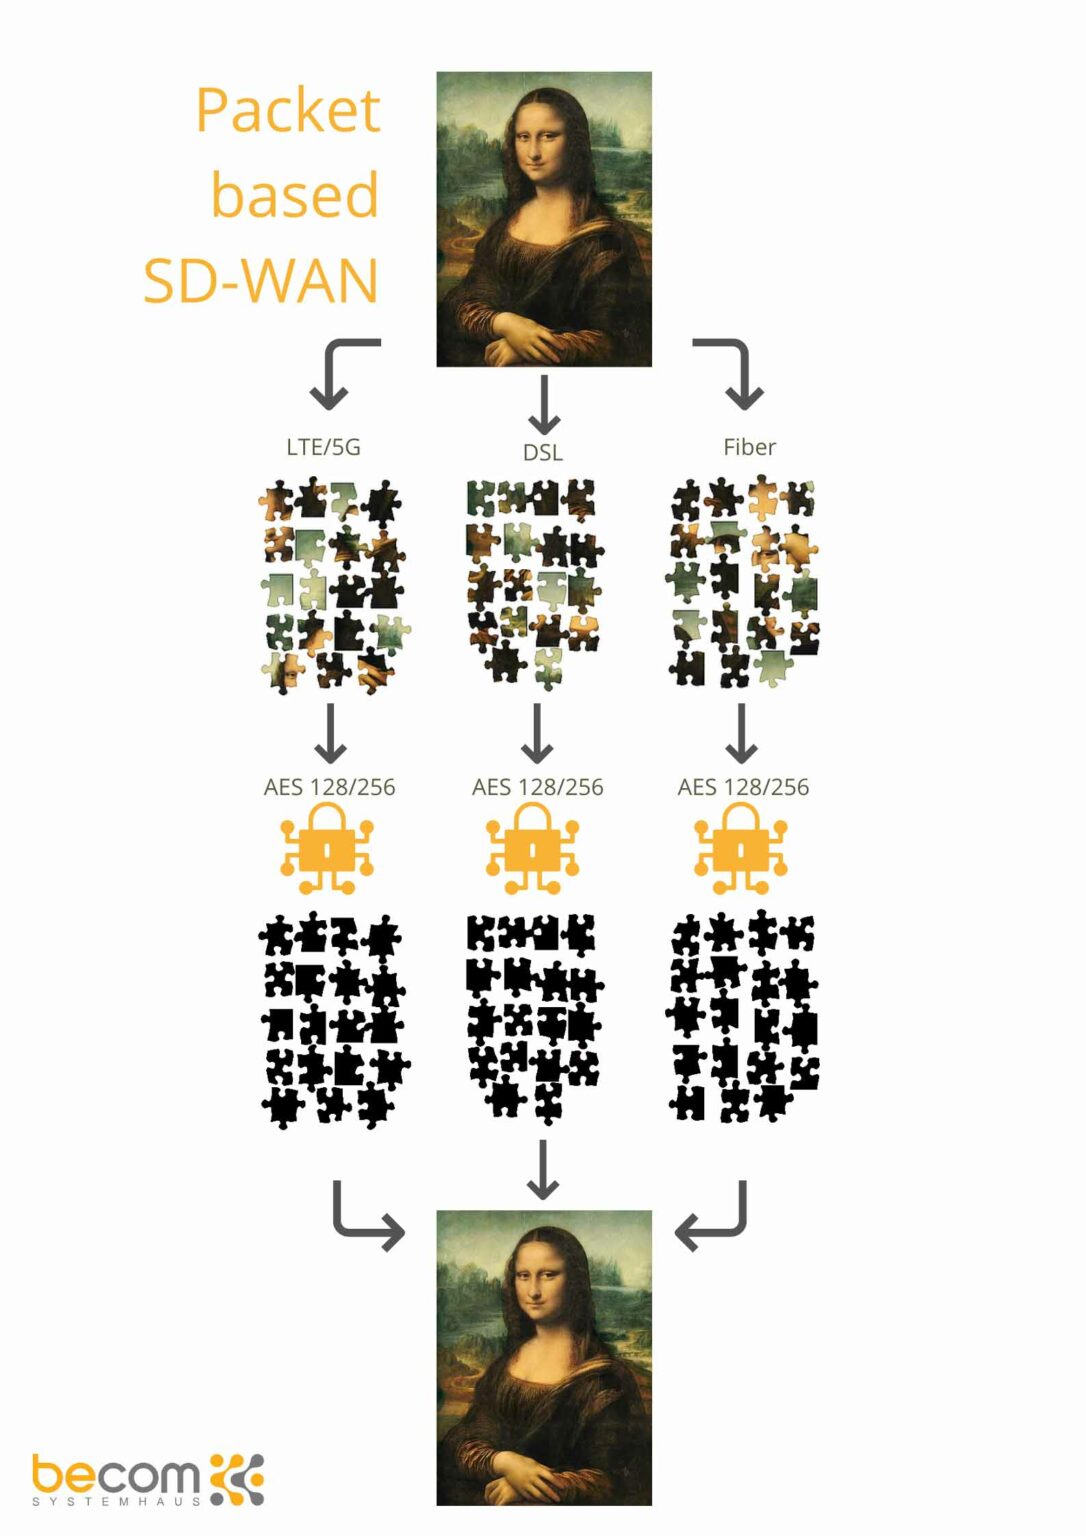 Grafische Darstellung - Packet based SD-WAN